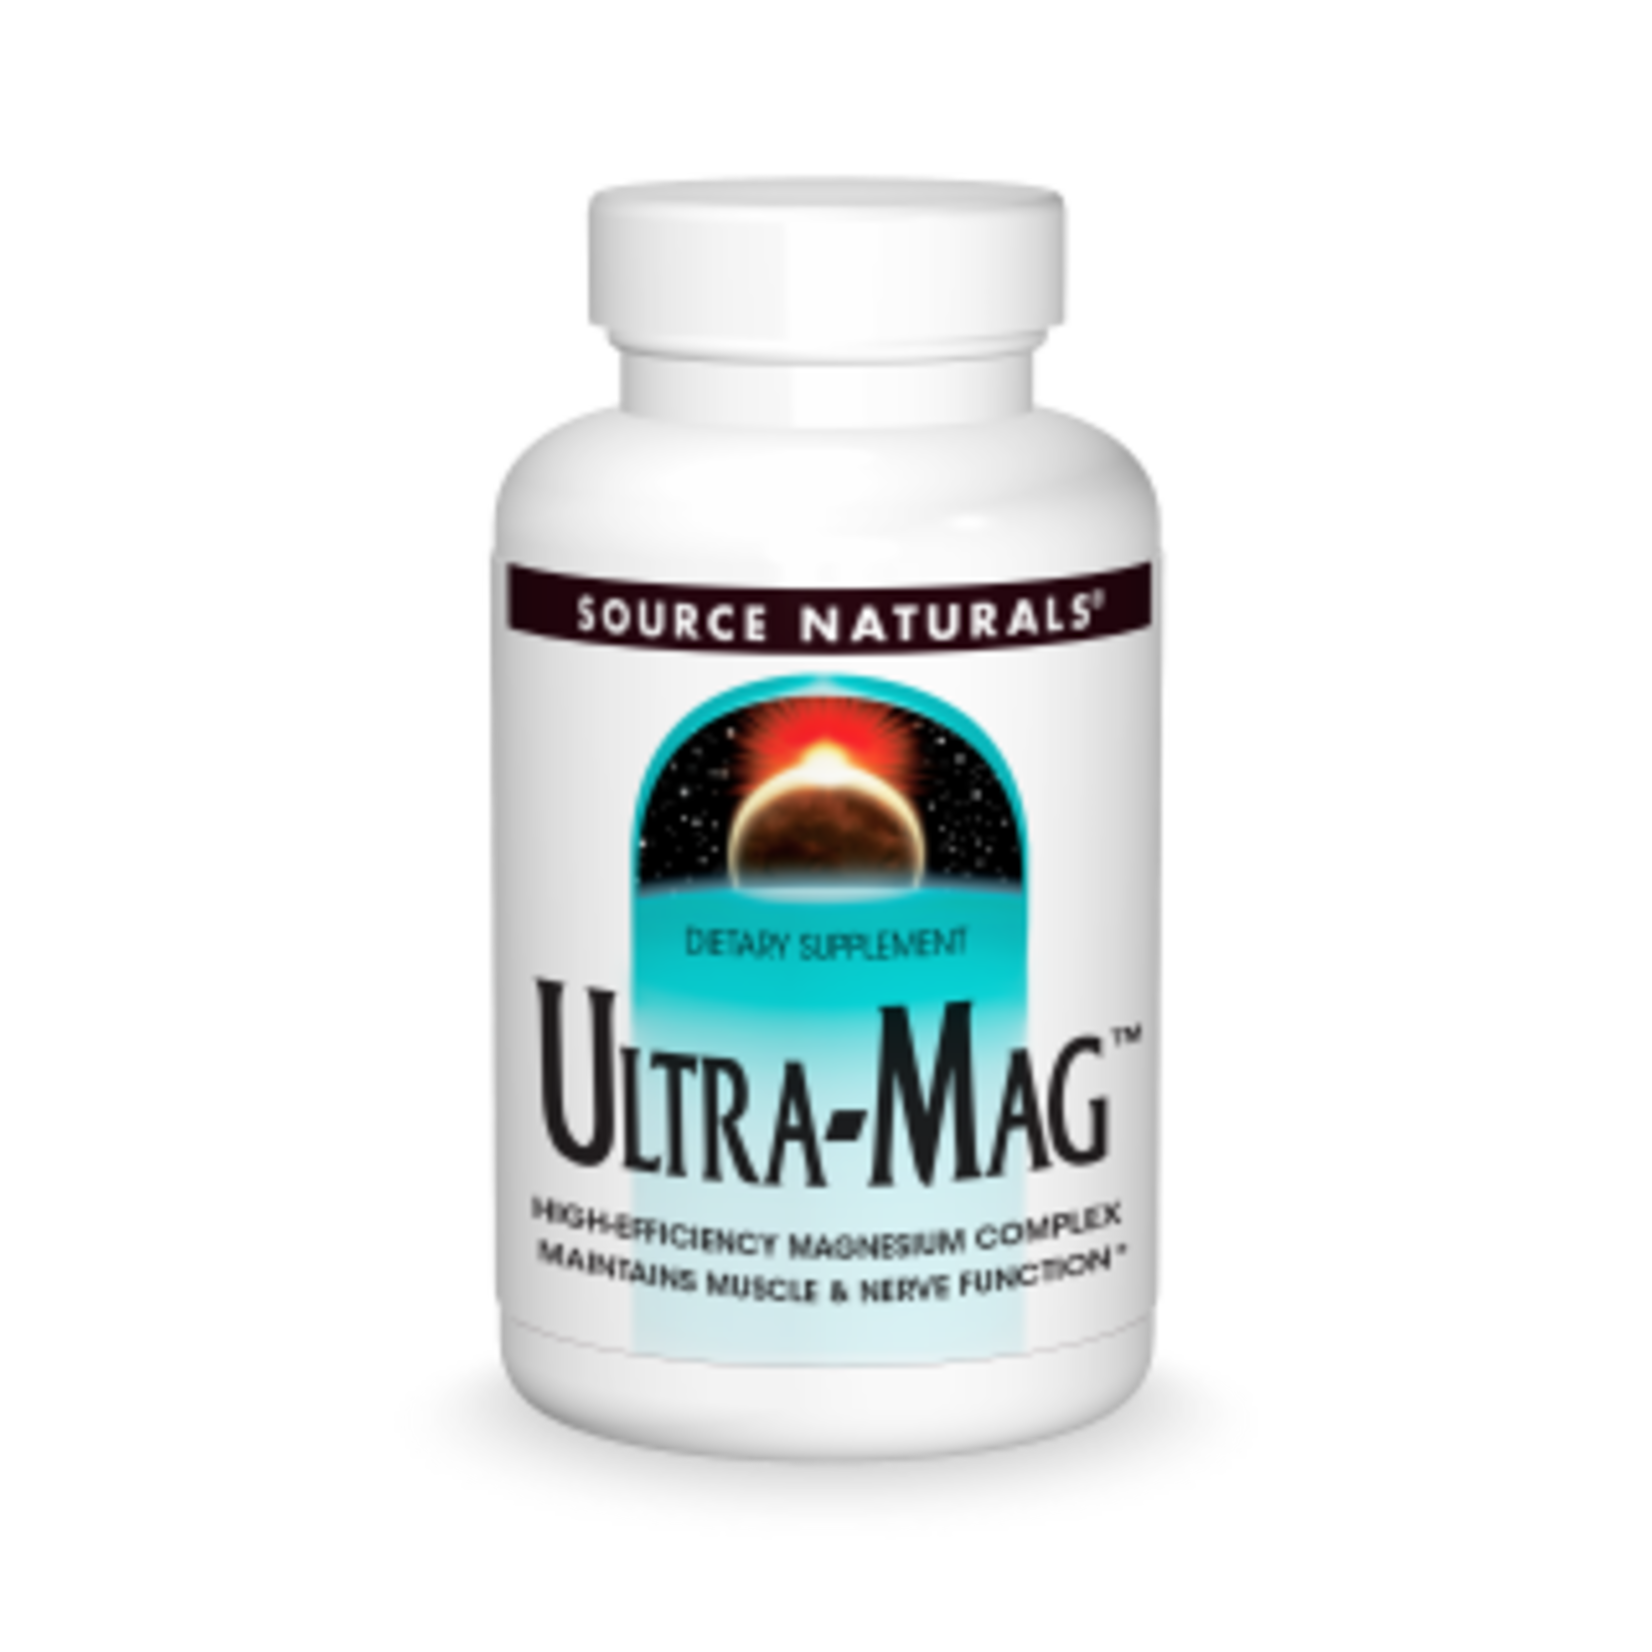 Source Naturals Source Naturals - Ultra-Mag - 120 Tablets